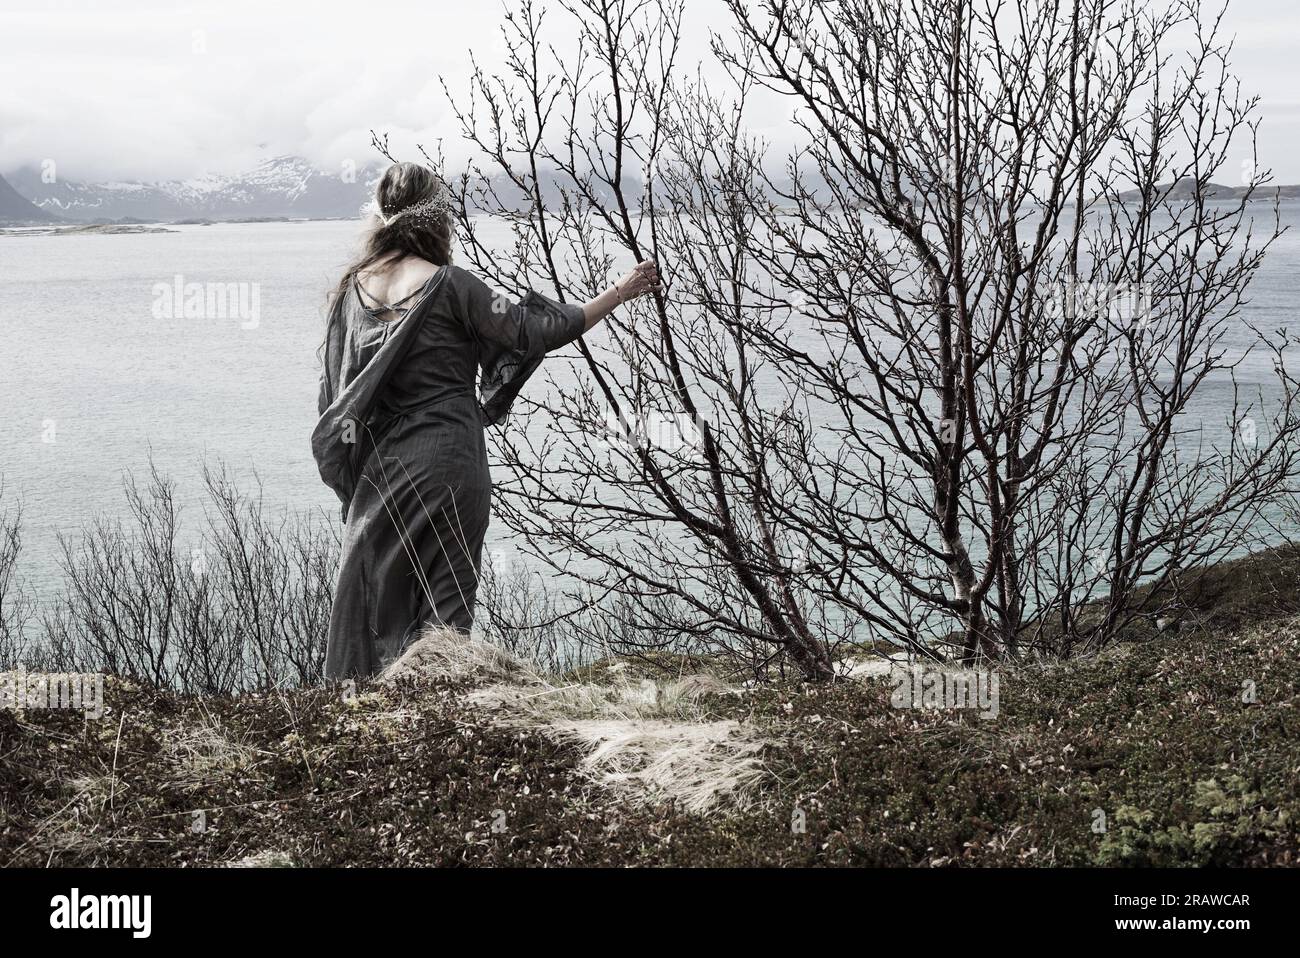 Femme médiévale regardant sur un fjord. La coloration artistique évoque un monde magique et fantastique où nous aimerions tous nous évader juste pour une journée. Banque D'Images